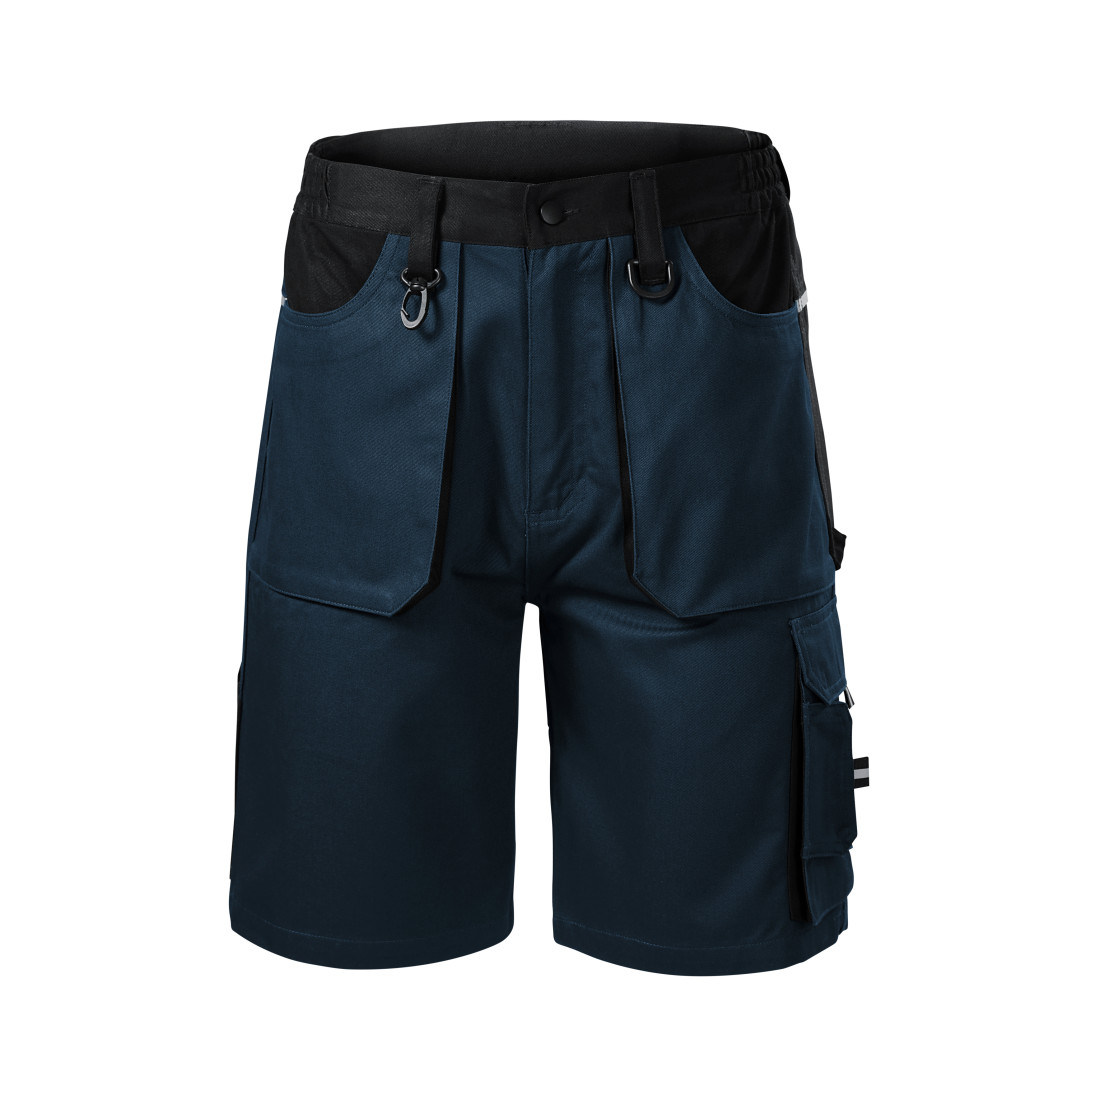 Pantalones cortos de trabajo WOODY para hombres - Ropa de protección